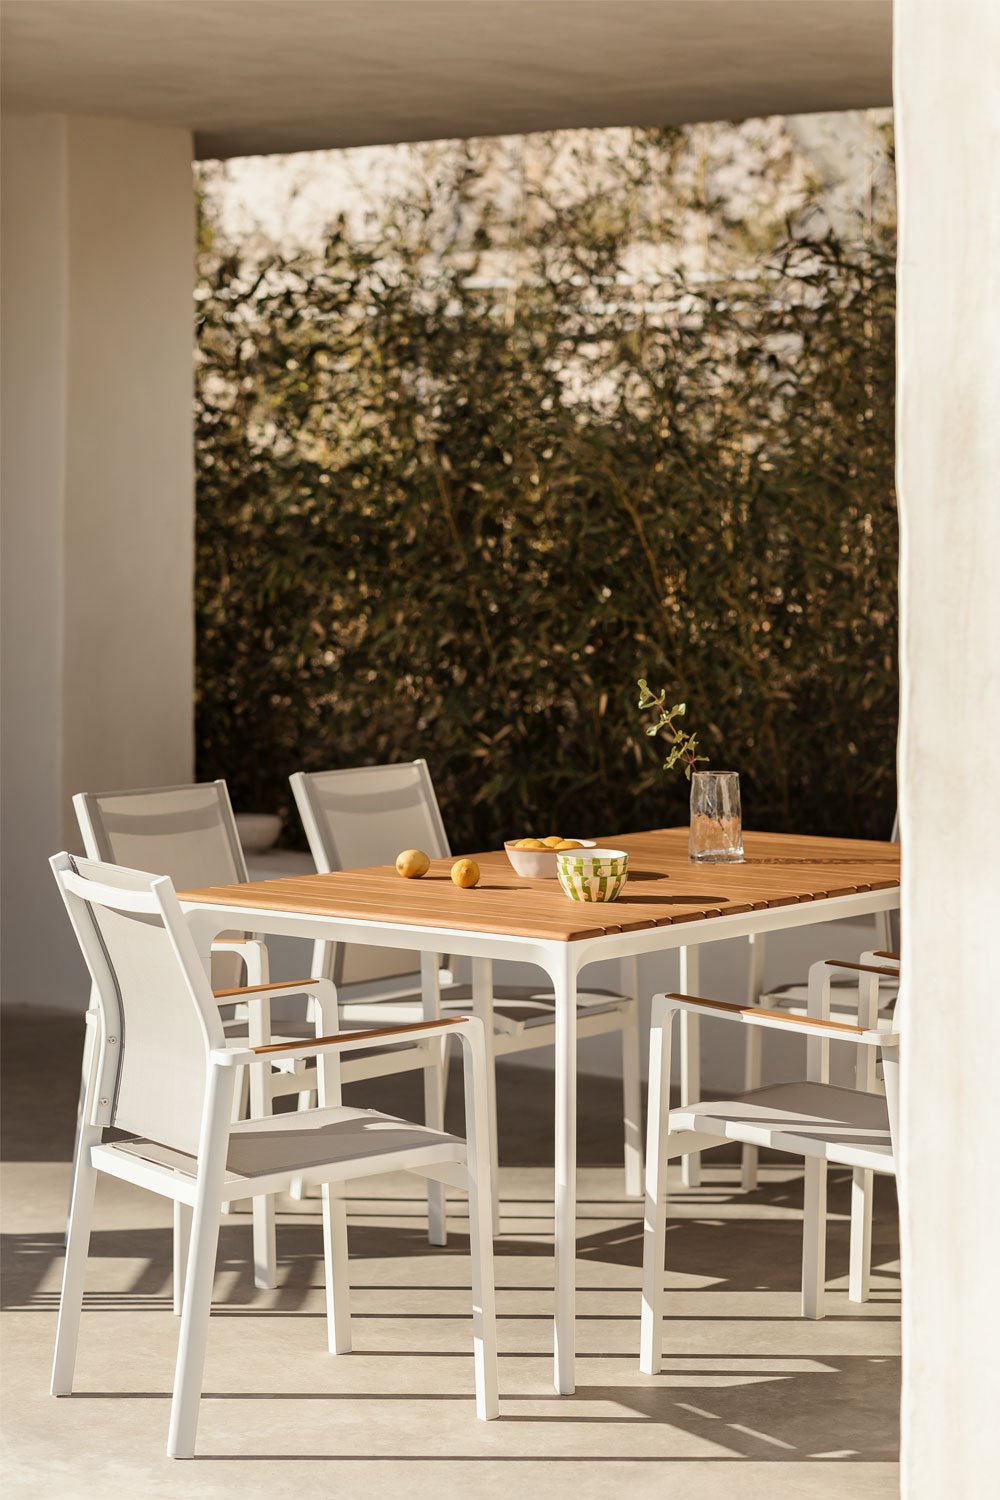 Set aus rechteckigem Katiana-Tisch aus Aluminium und Teakholz (160 x 90 cm) und 6 Aluminium-Gartenstühlen Elvira, Galeriebild 1